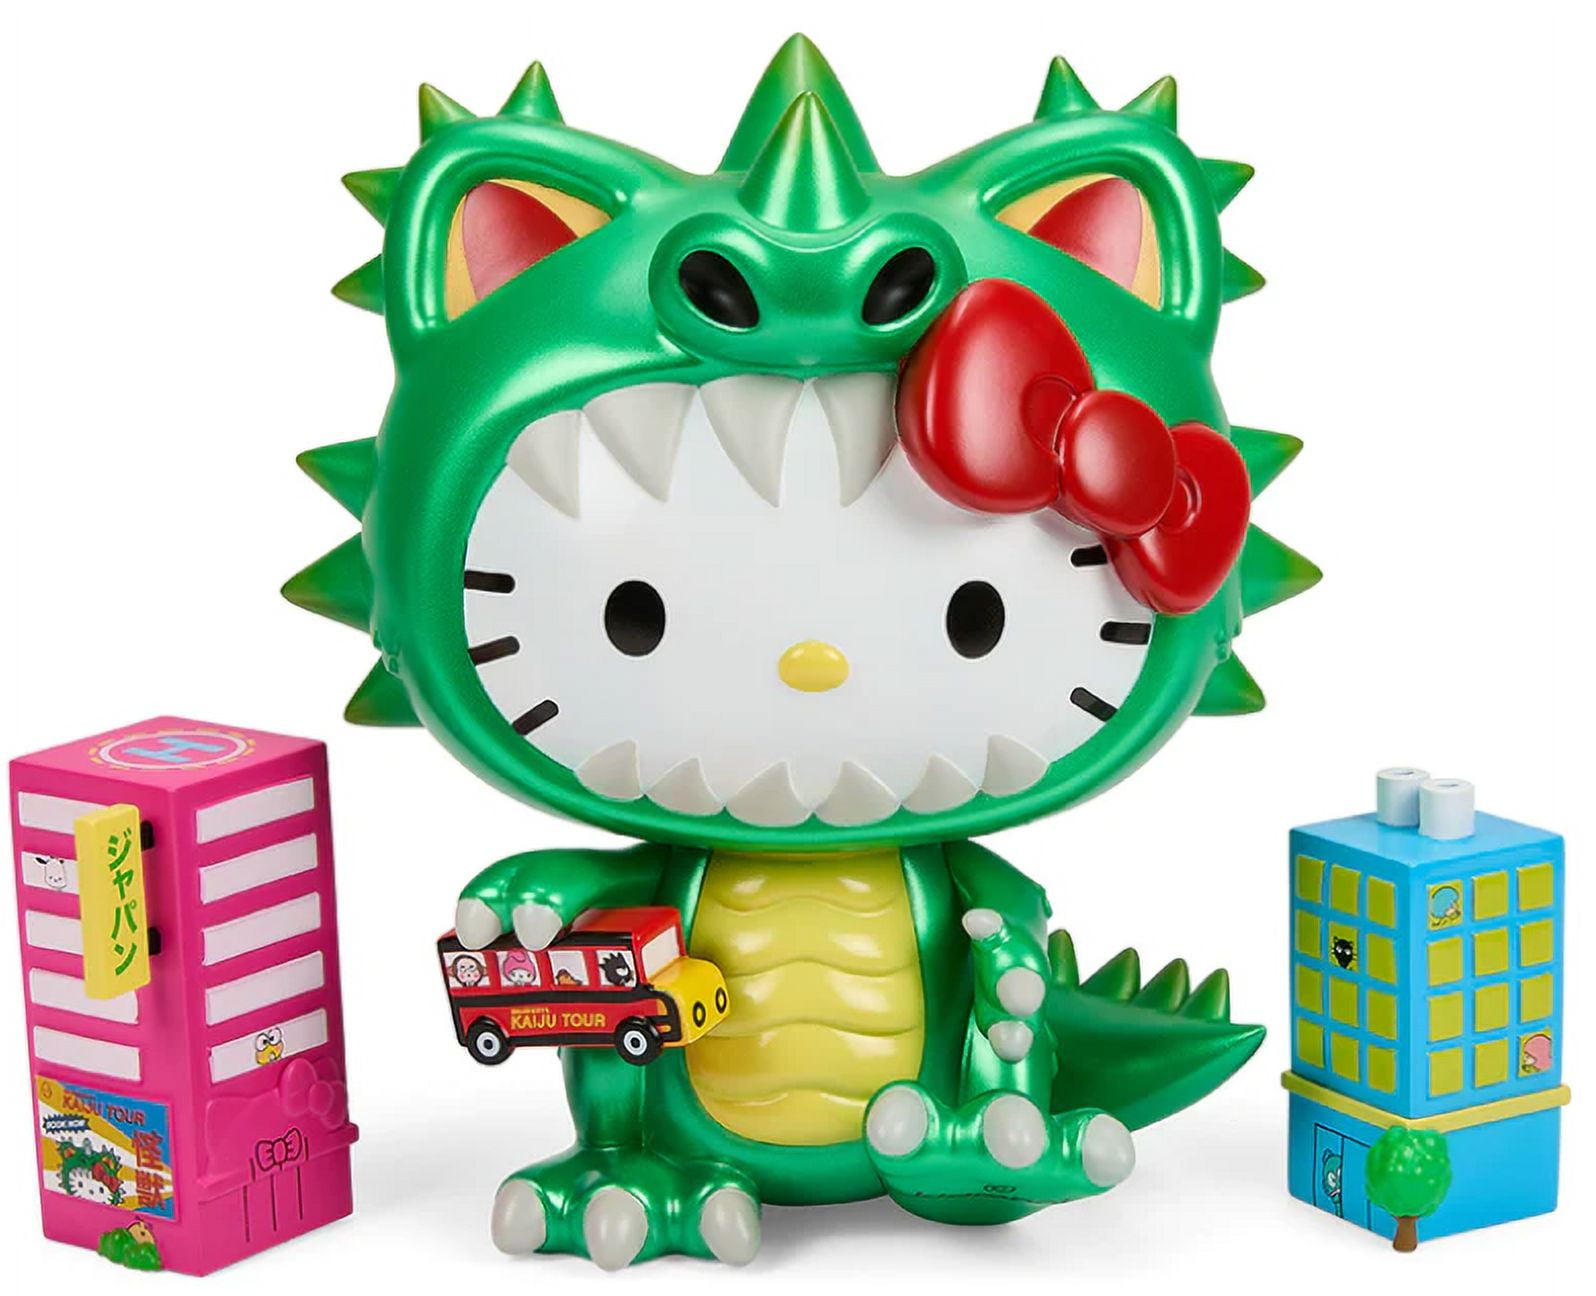 Hello Kitty 862915 12 in. Hello Kitty Dinosaur Plush Figurine, Green 